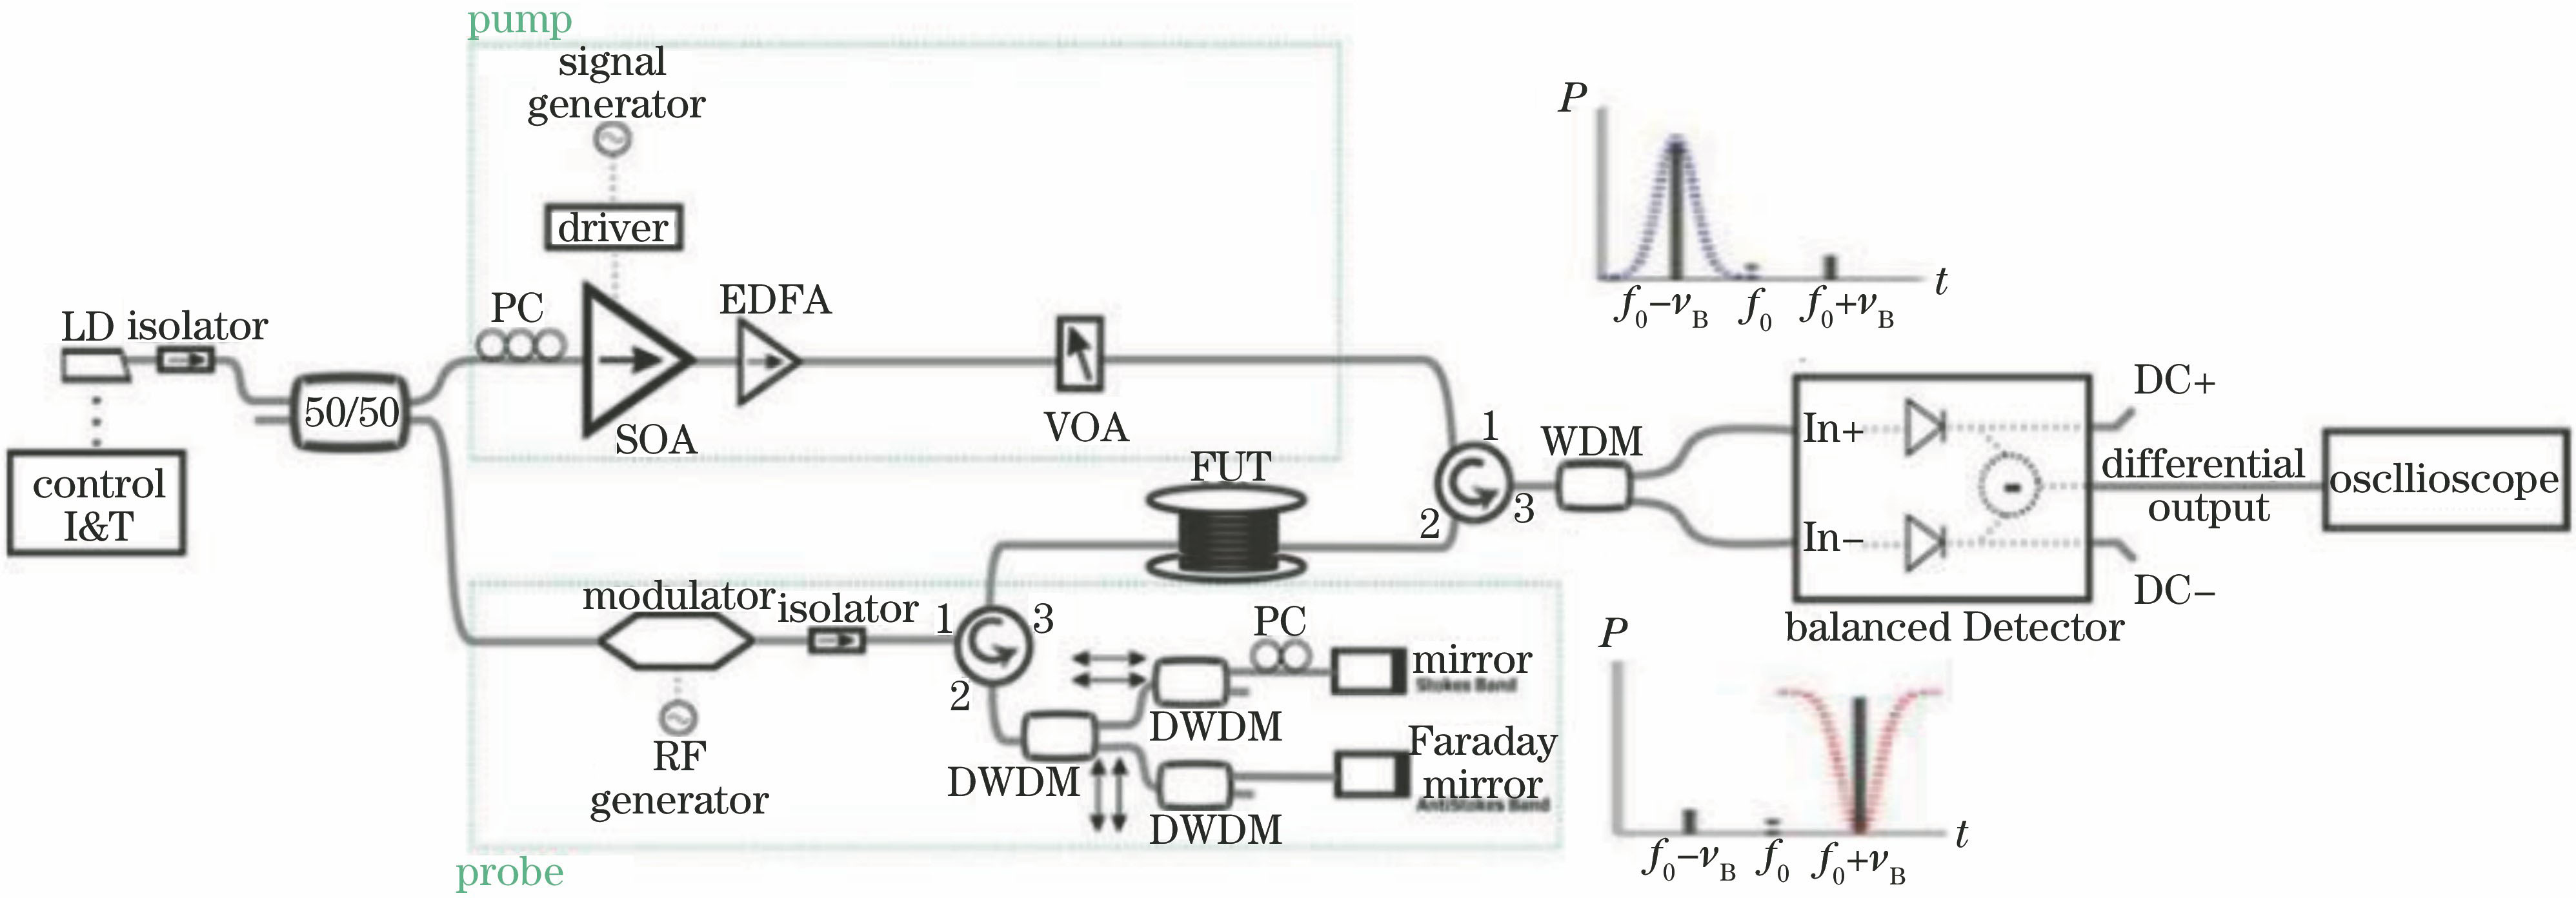 Experimental setup of BOTDA system with balanced detection and polarization noise elimination